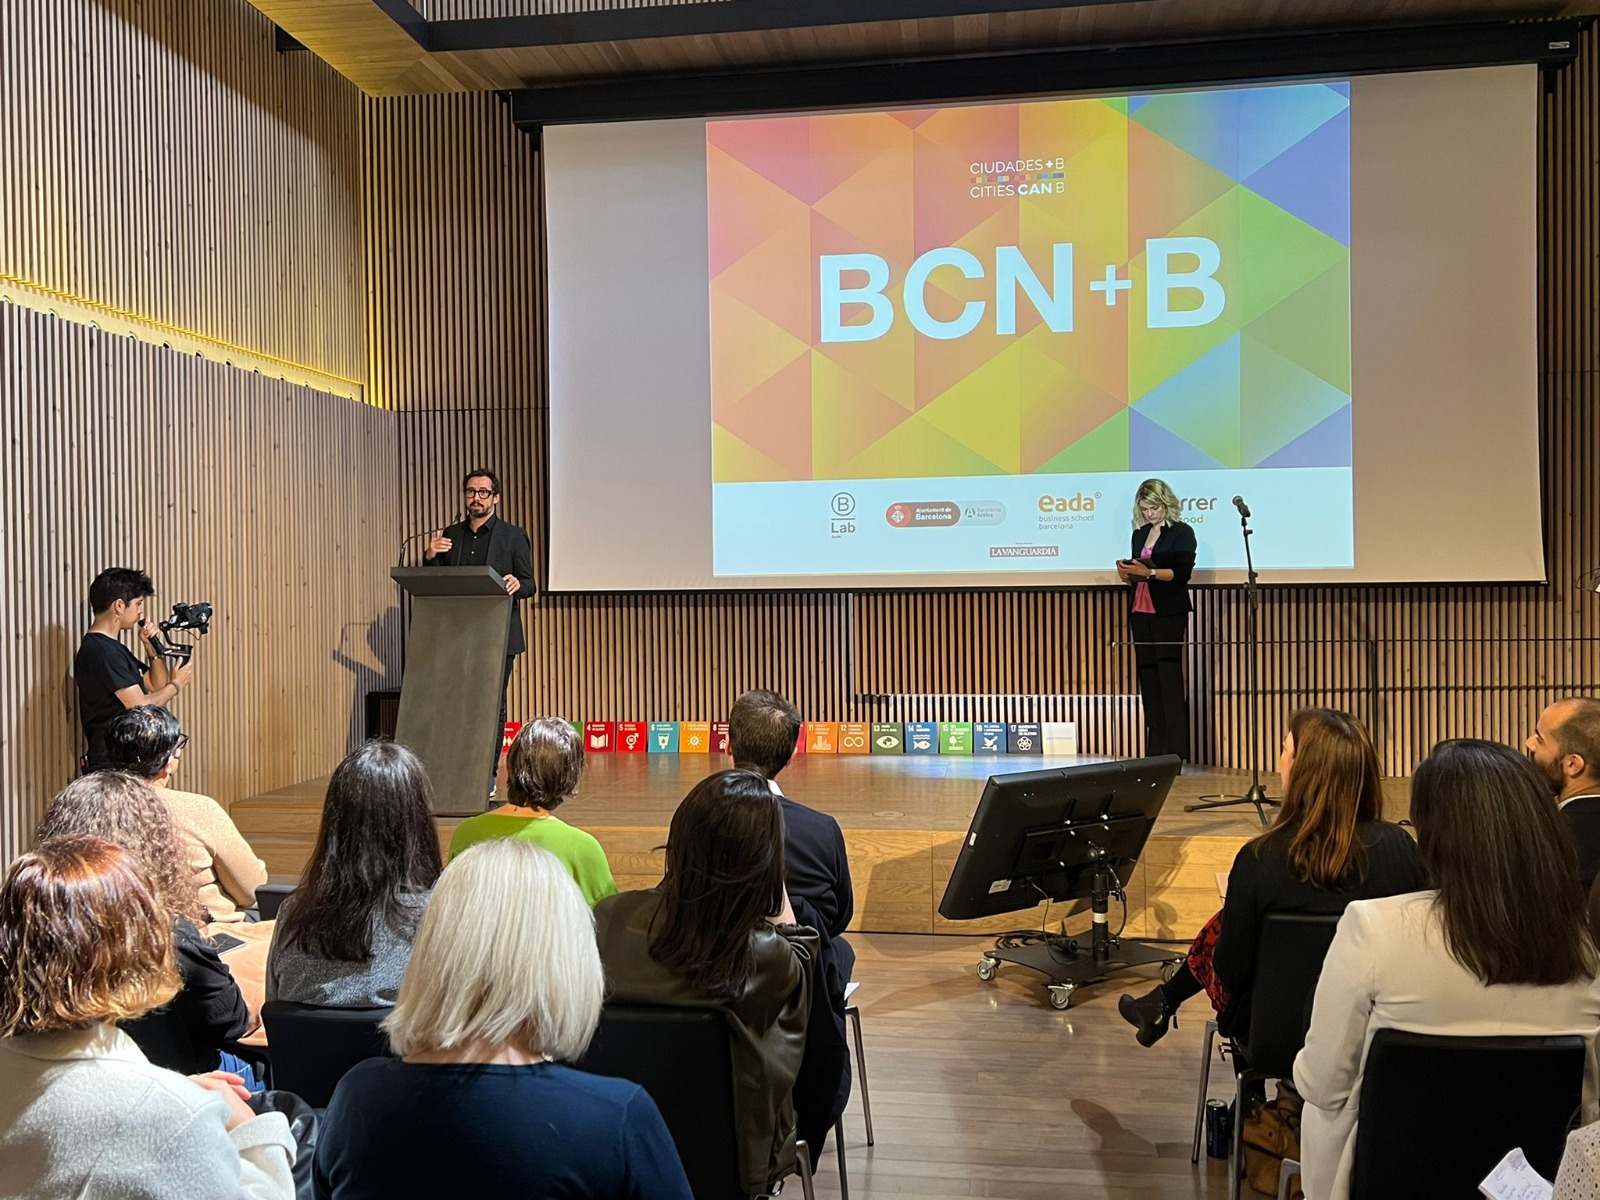 Presentació del nou projecte Barcelona+B